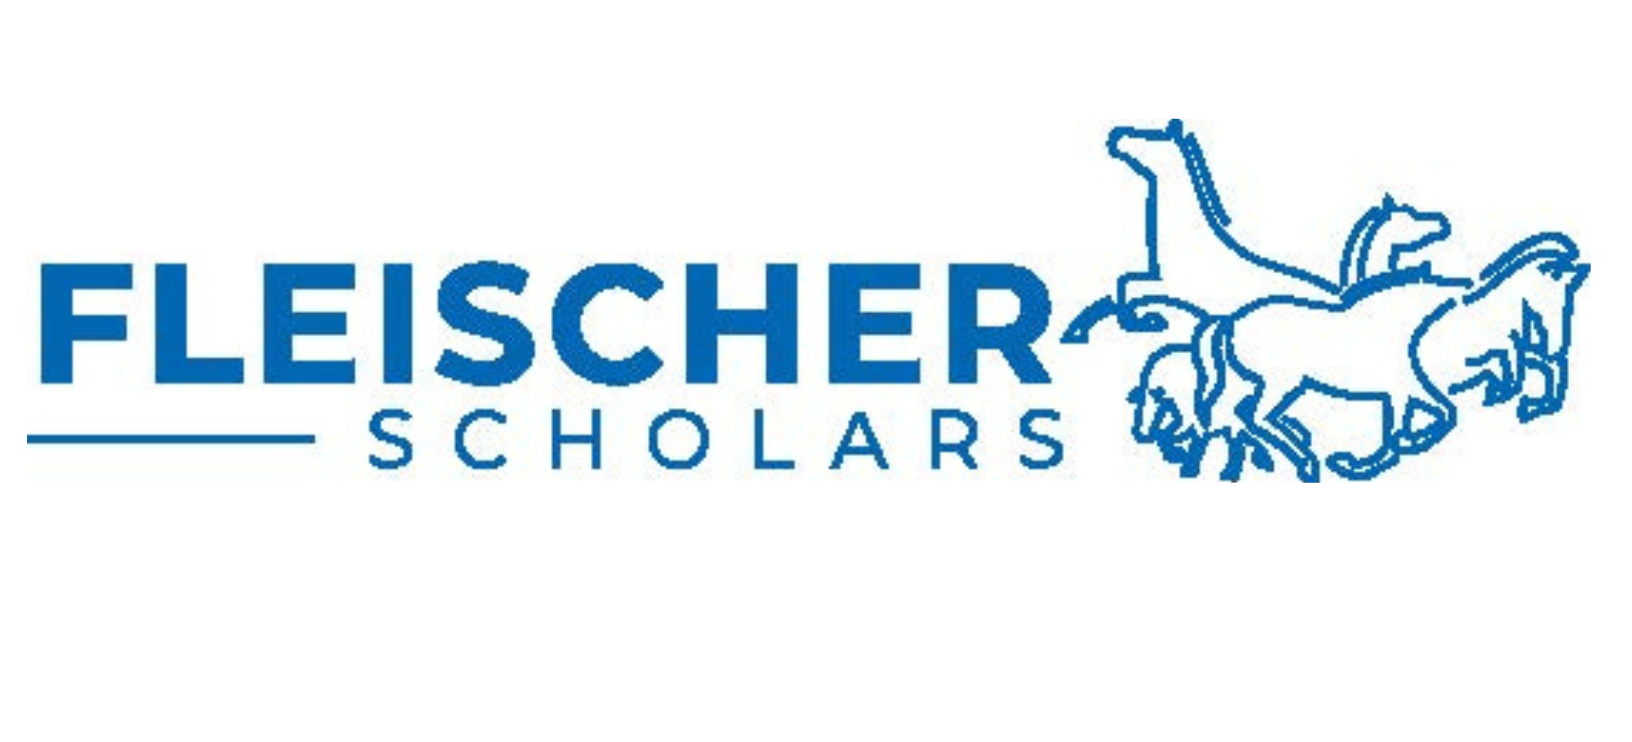 Fleischer Scholars Foundation